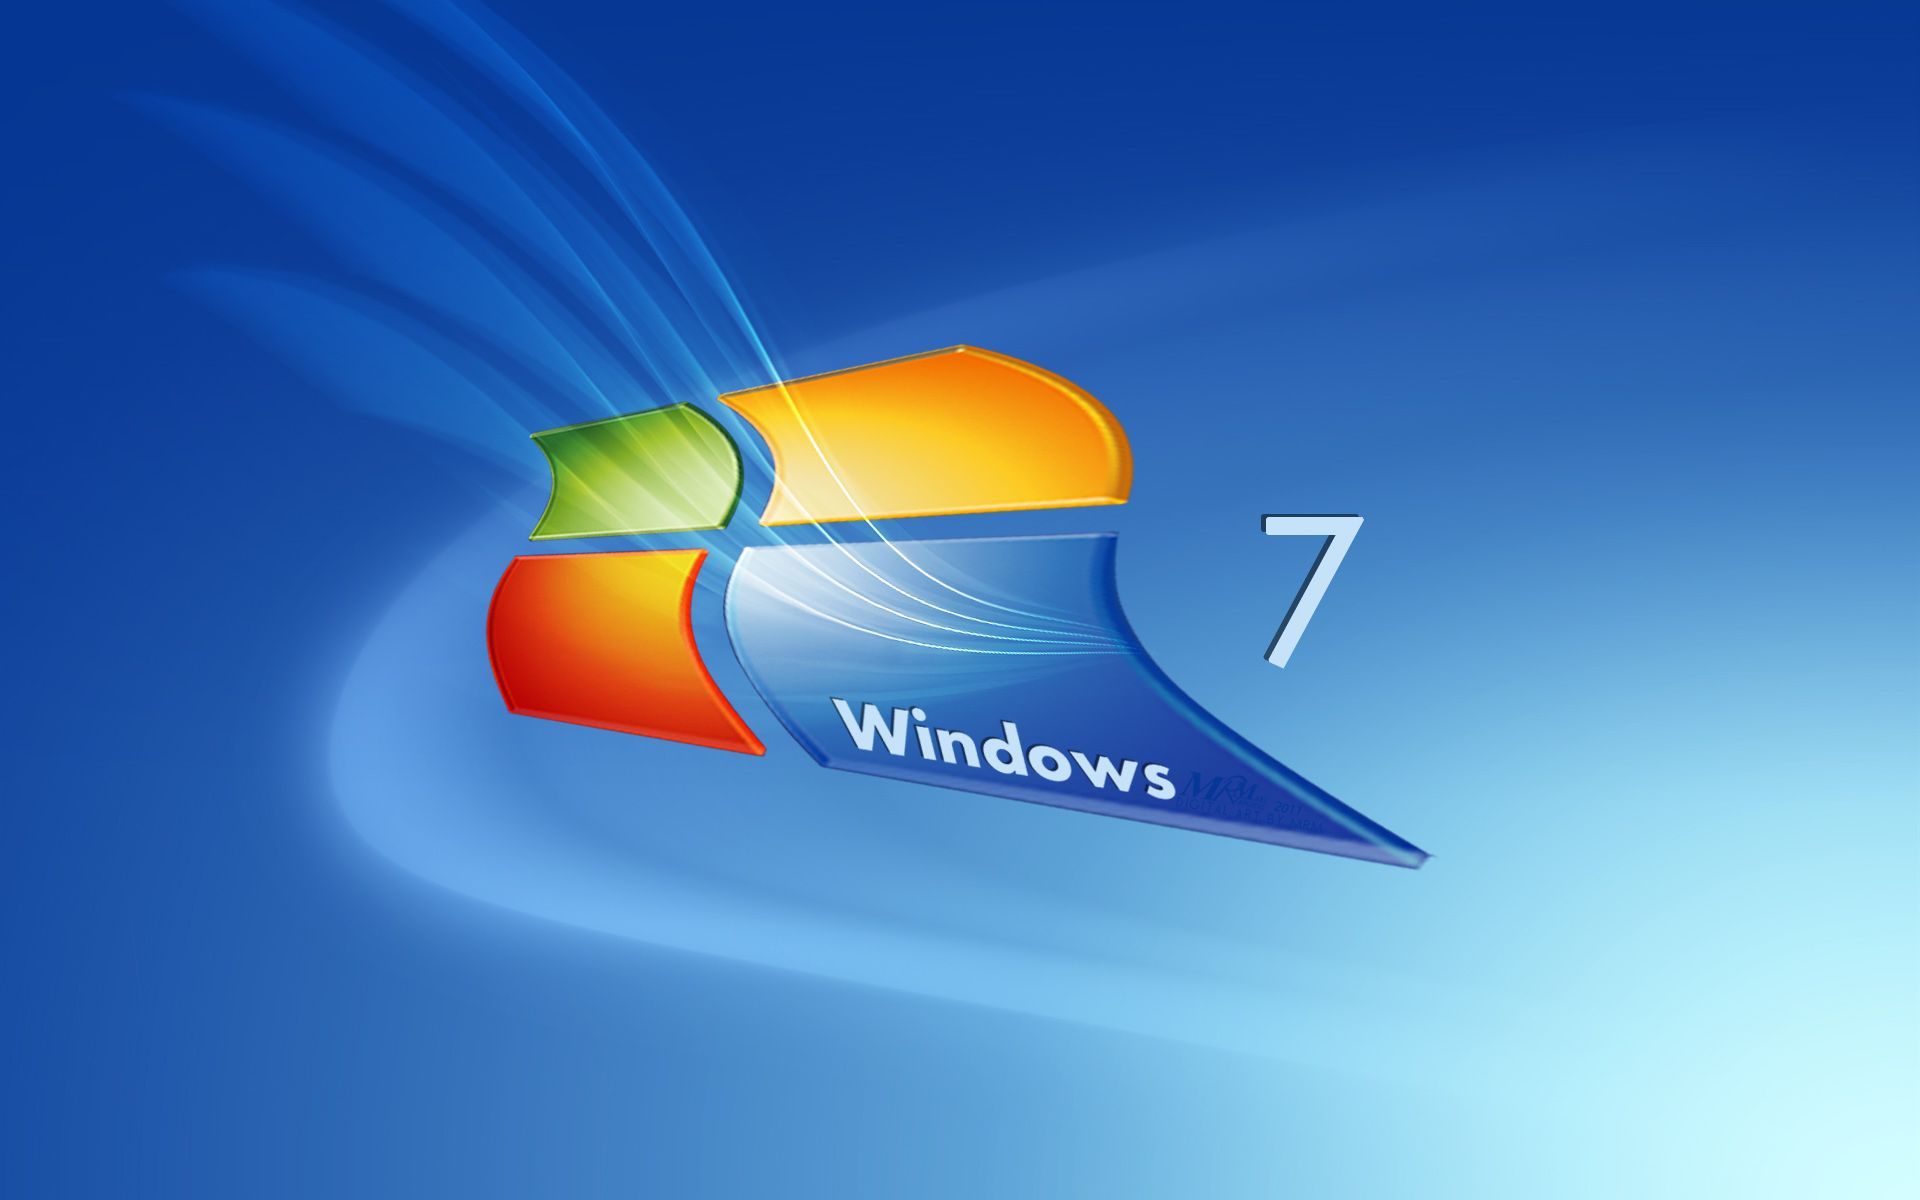 Windows 7 fondo de pantalla | Fondos de pantalla en 2019 | Fondo de escritorio de Windows